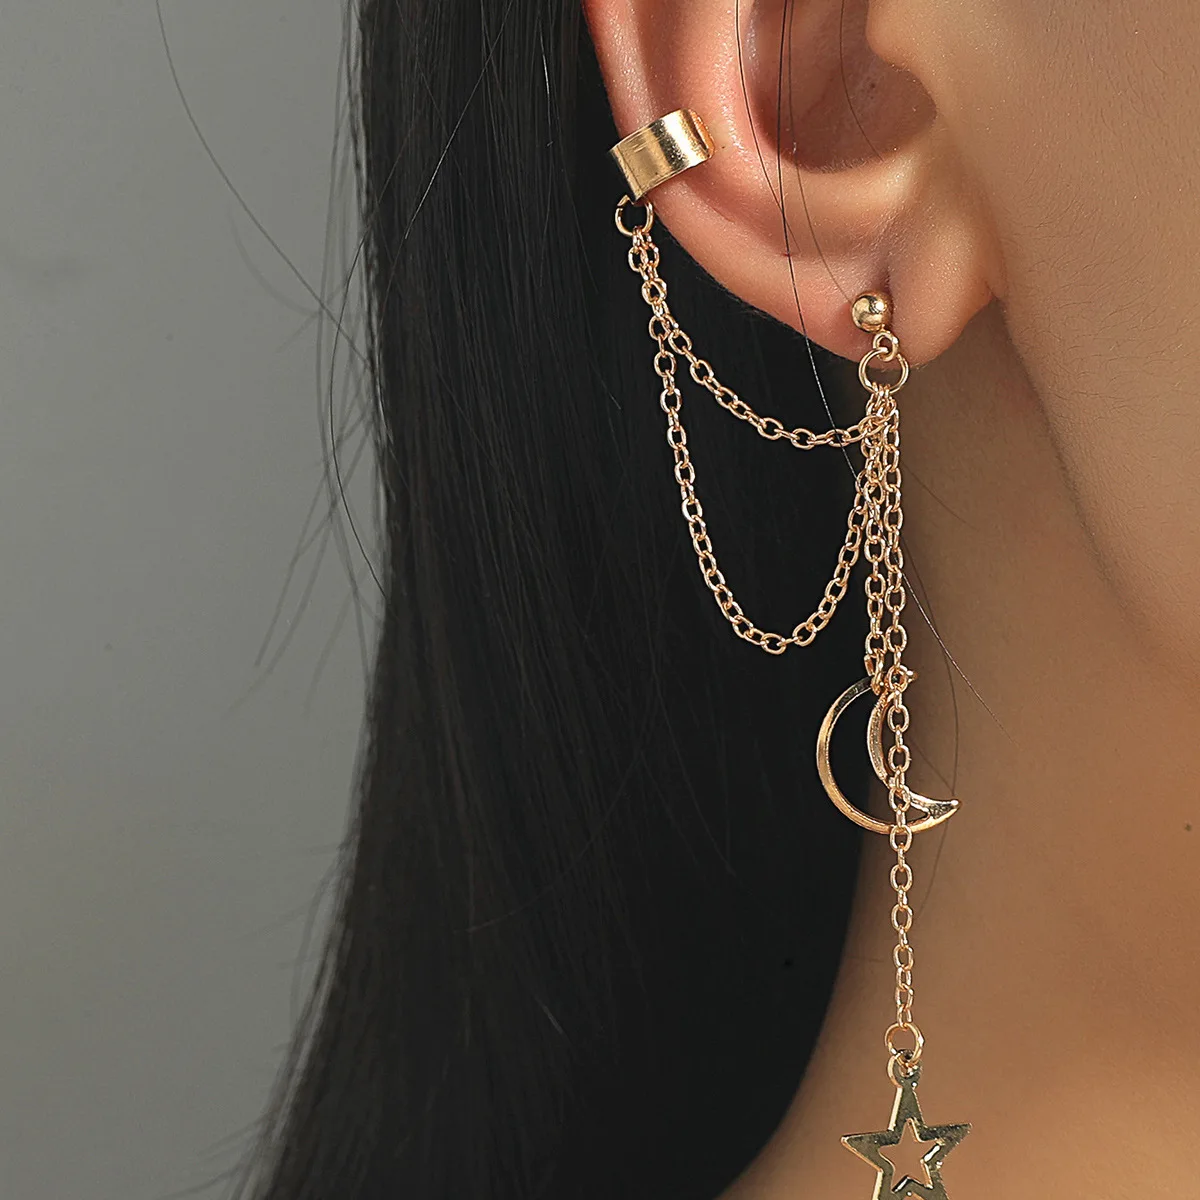 New Fashion Stars Moon Clip Earrings Ear Hook Personality Metal Ear Clips Double Pierced Ear for Women Girls Jewelry